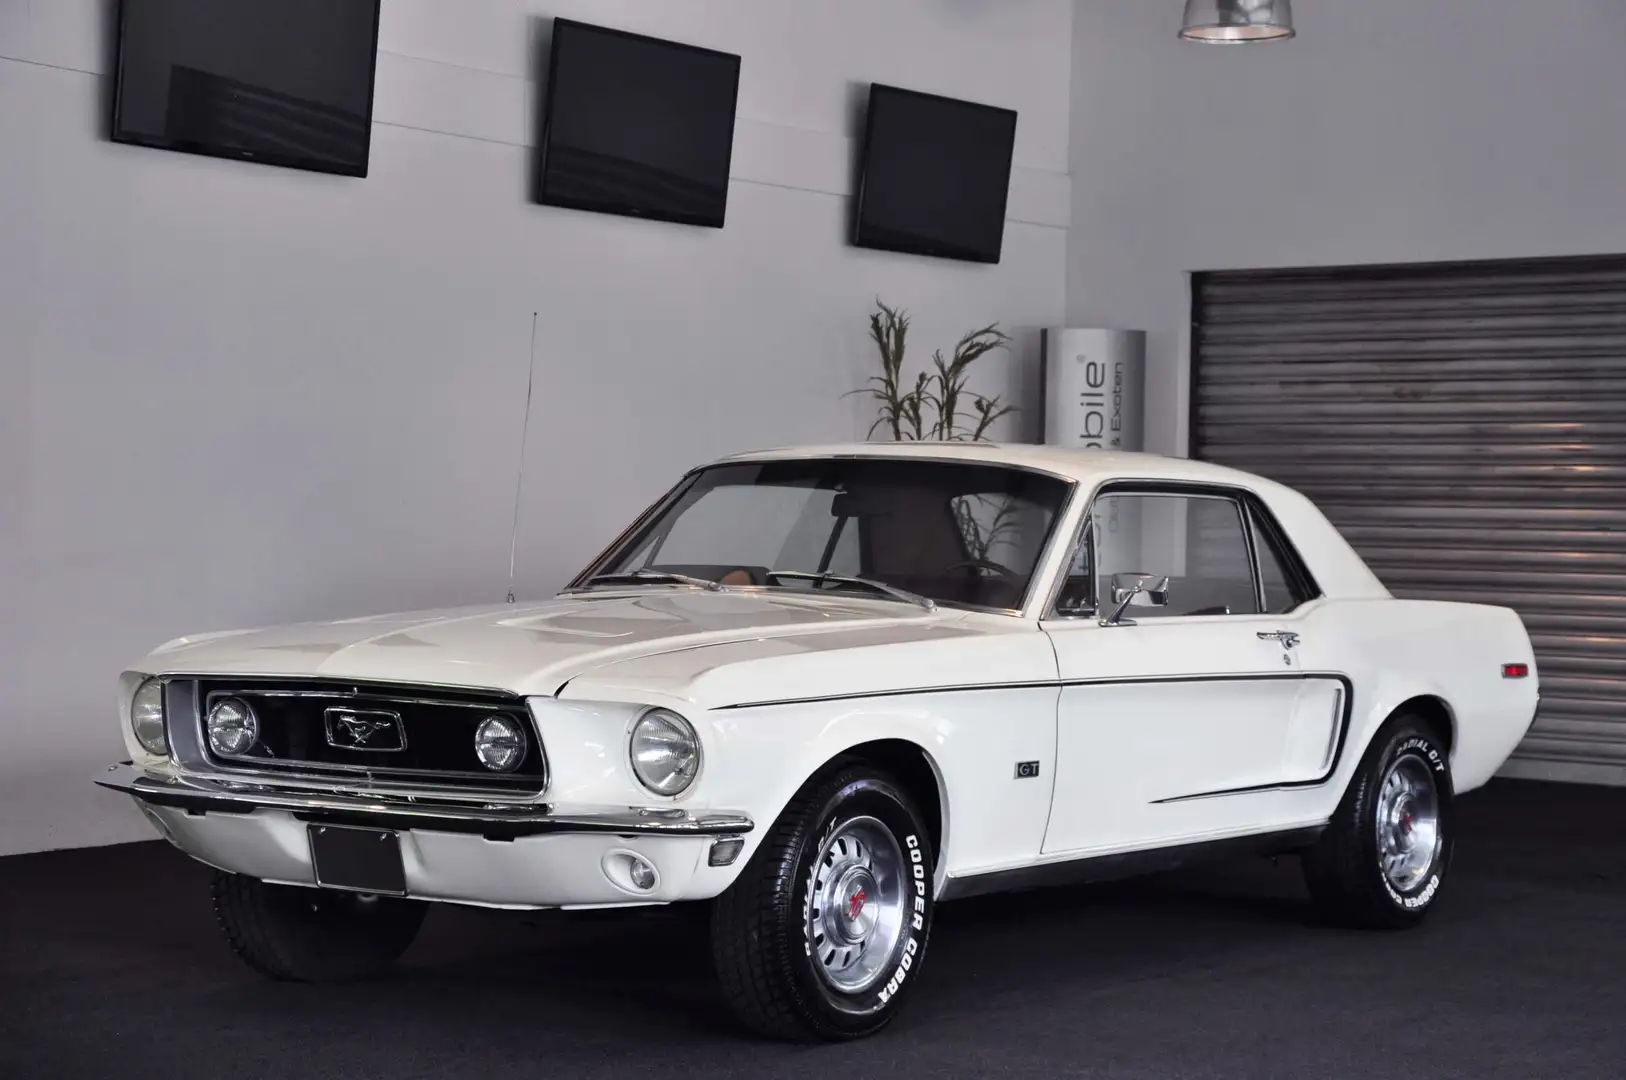 Ford Mustang GT 302 ! Echter J-Code (5.0 V8) ! Baujahr 1968 ! White - 1